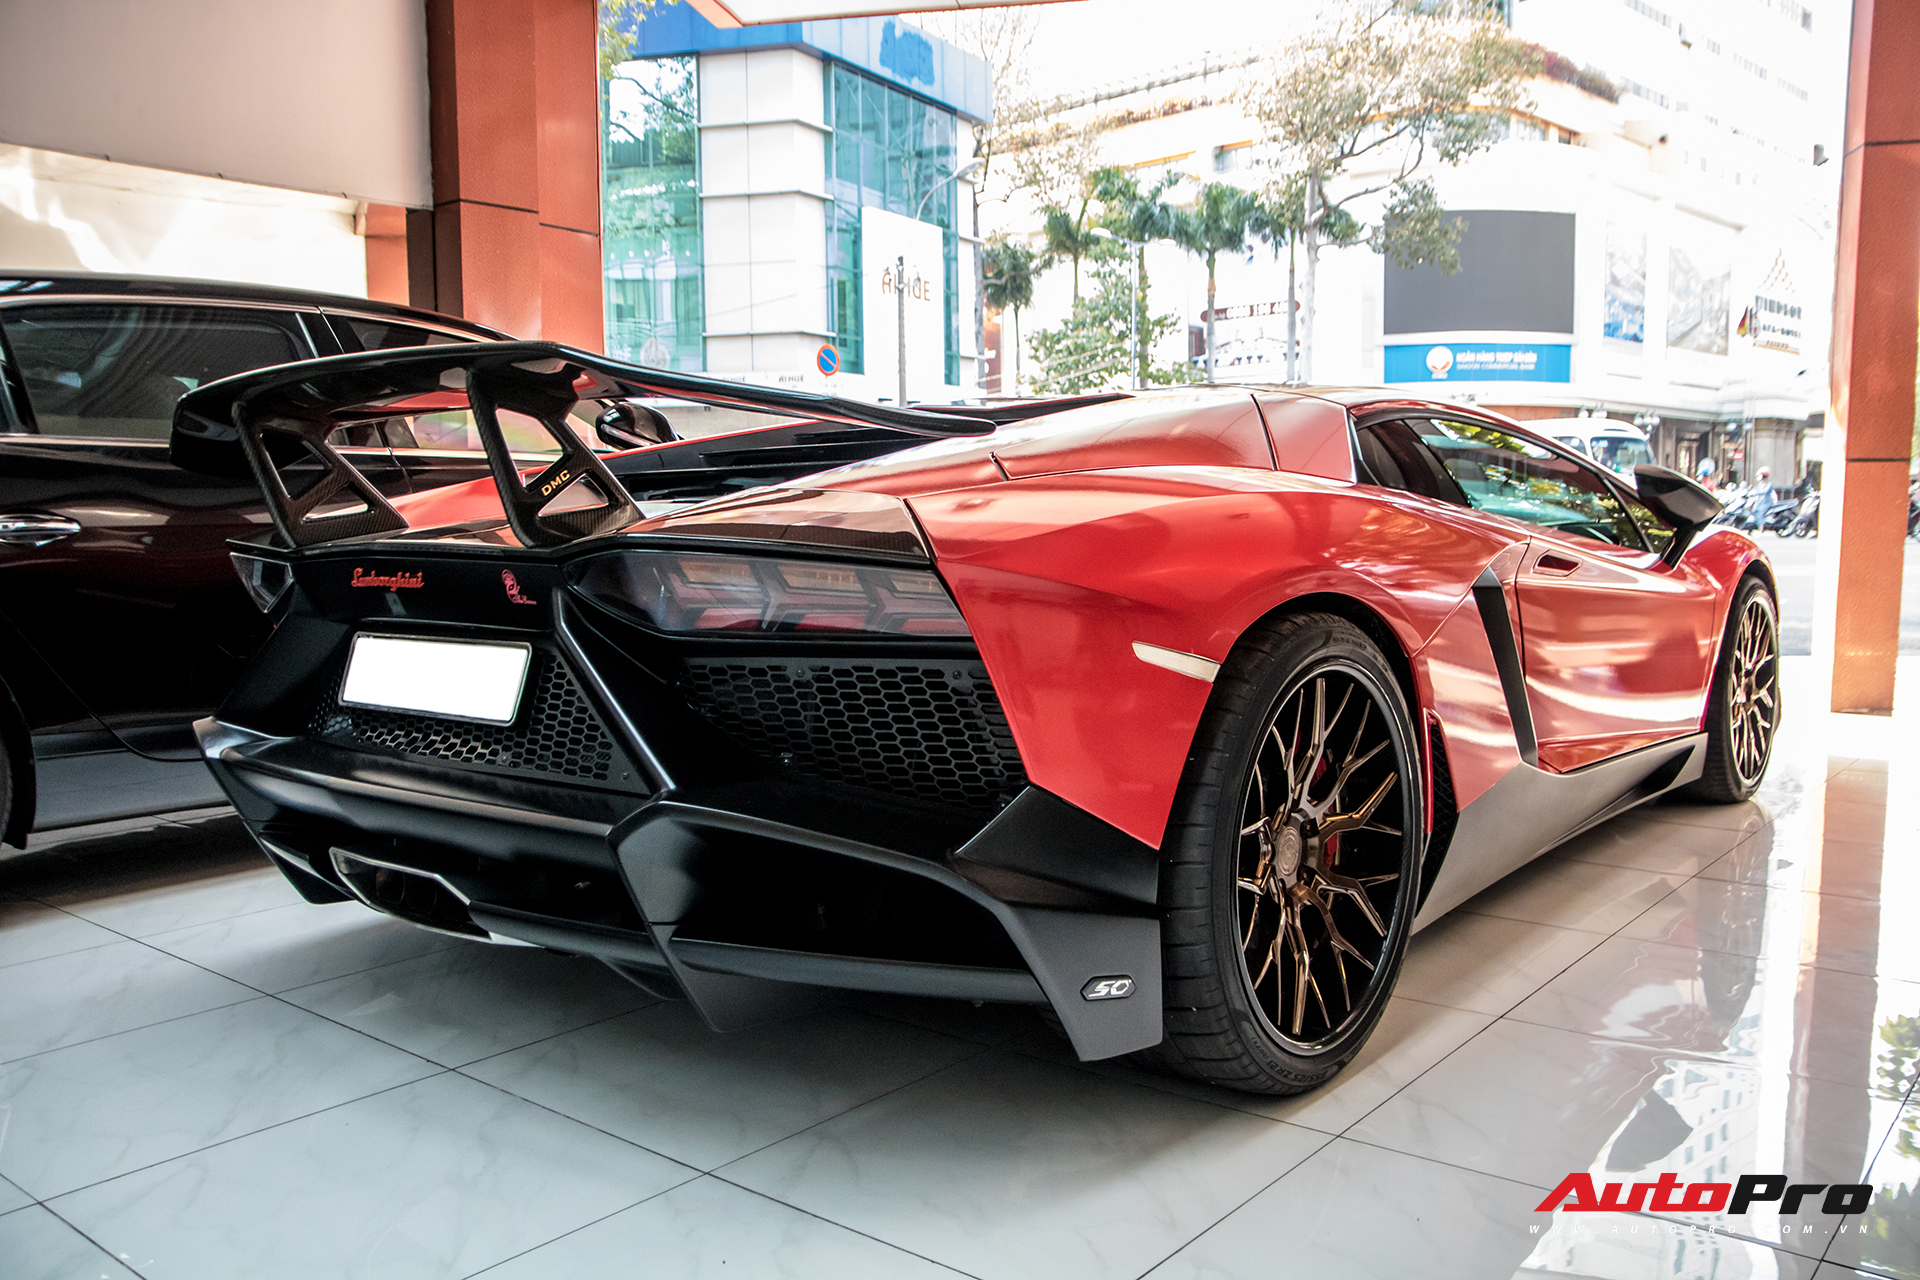 Thực hư chuyện Lamborghini Aventador độ bản 50 năm của đại gia Bạc Liêu bán lại cho showroom siêu xe lừng danh Sài Gòn - Ảnh 9.